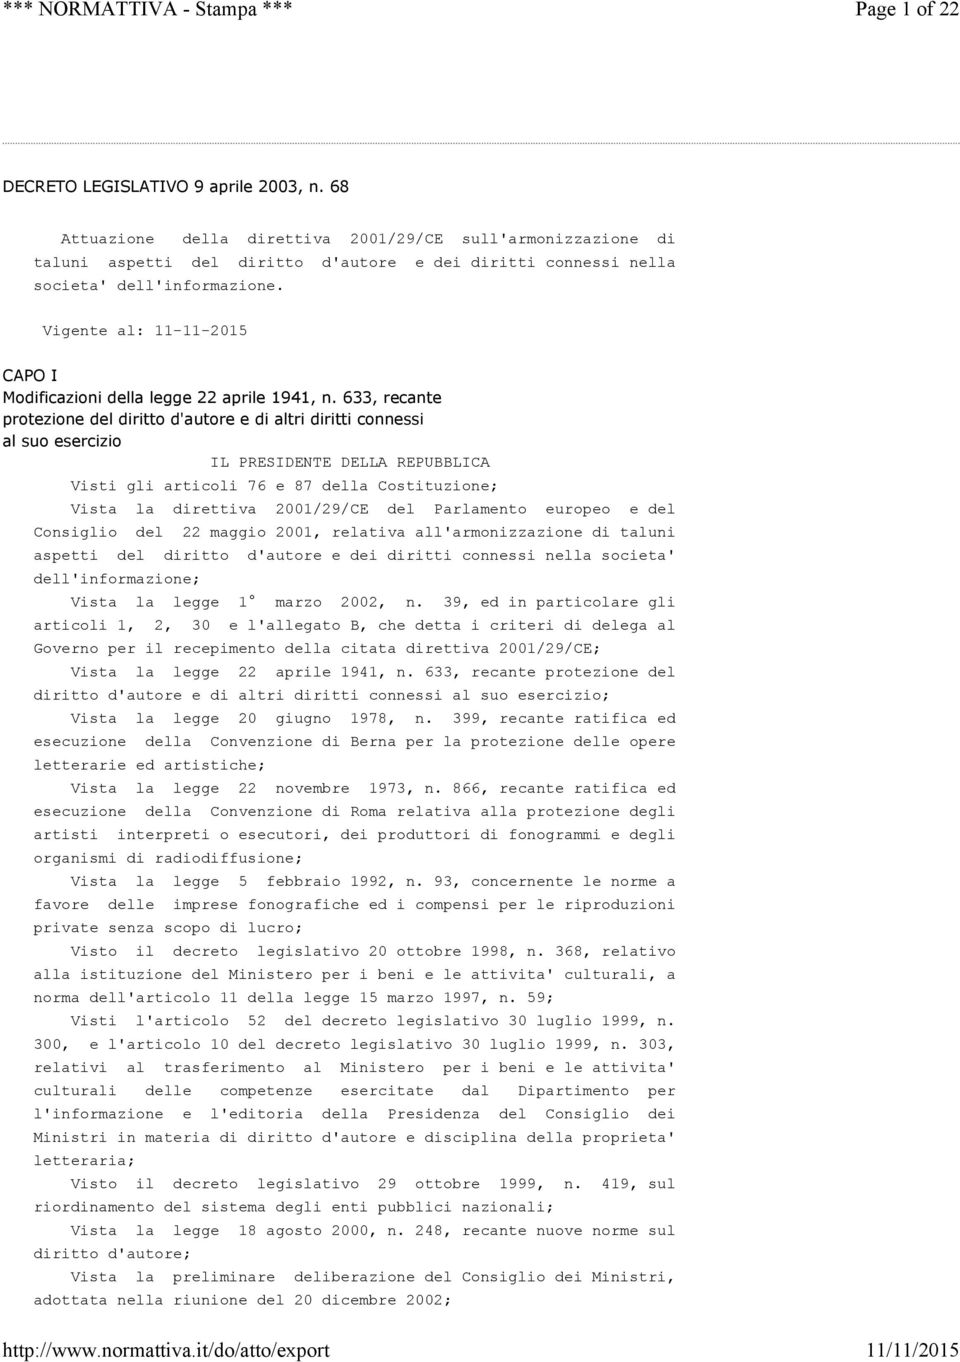 Vigente al: 11-11-2015 CAPO I Modificazioni della legge 22 aprile 1941, n.